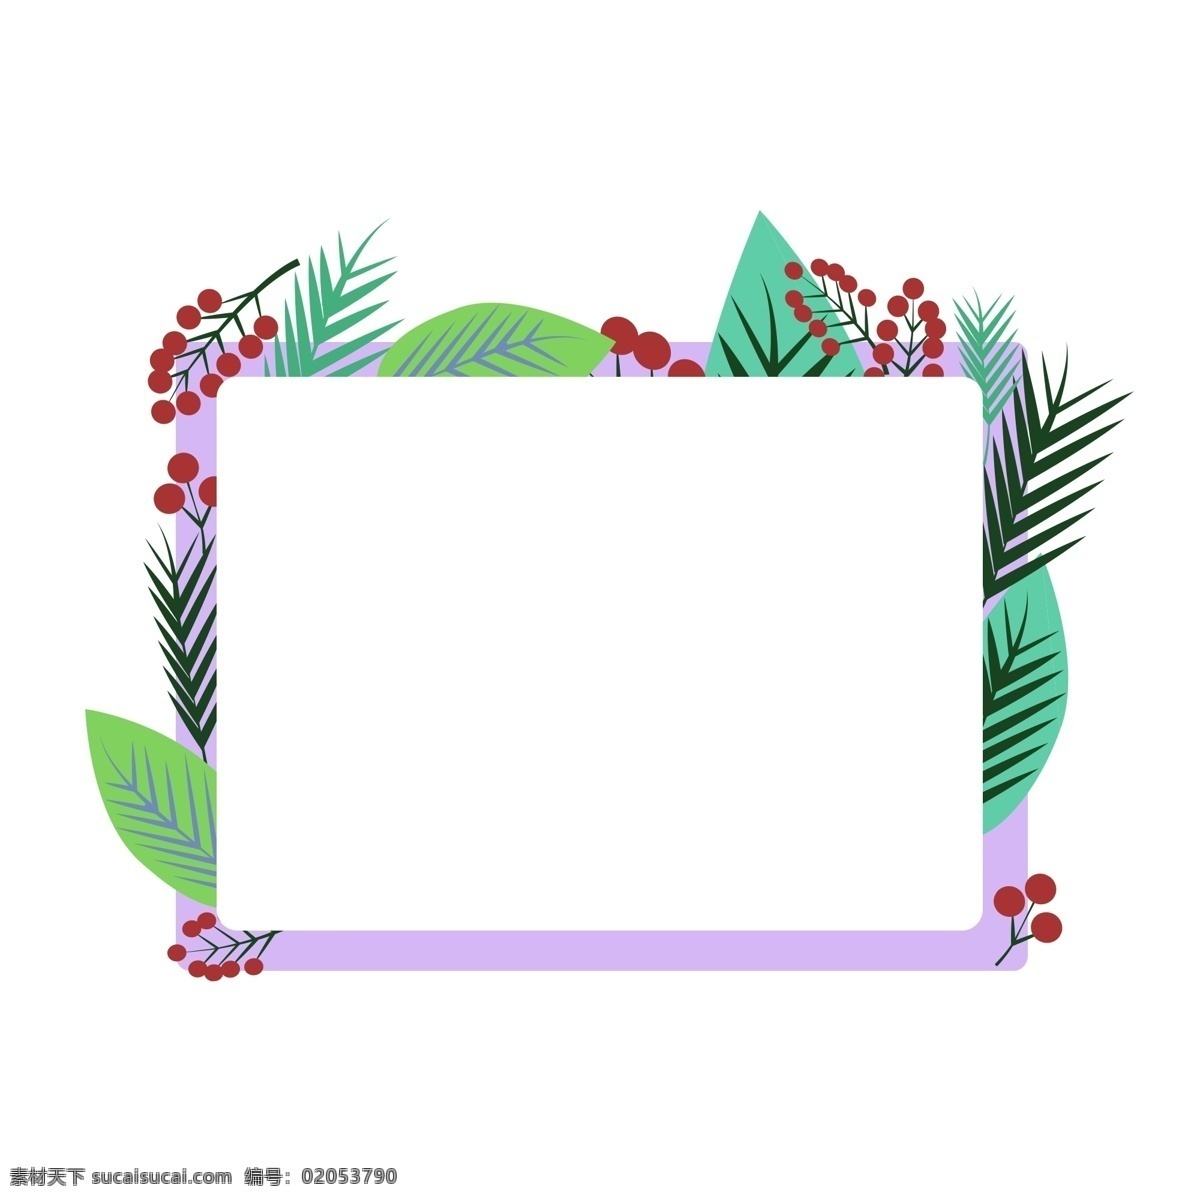 植物 叶子 边框 插画 植物边框 叶子边框 漂亮的边框 创意边框 边框装饰 边框插画 立体的边框